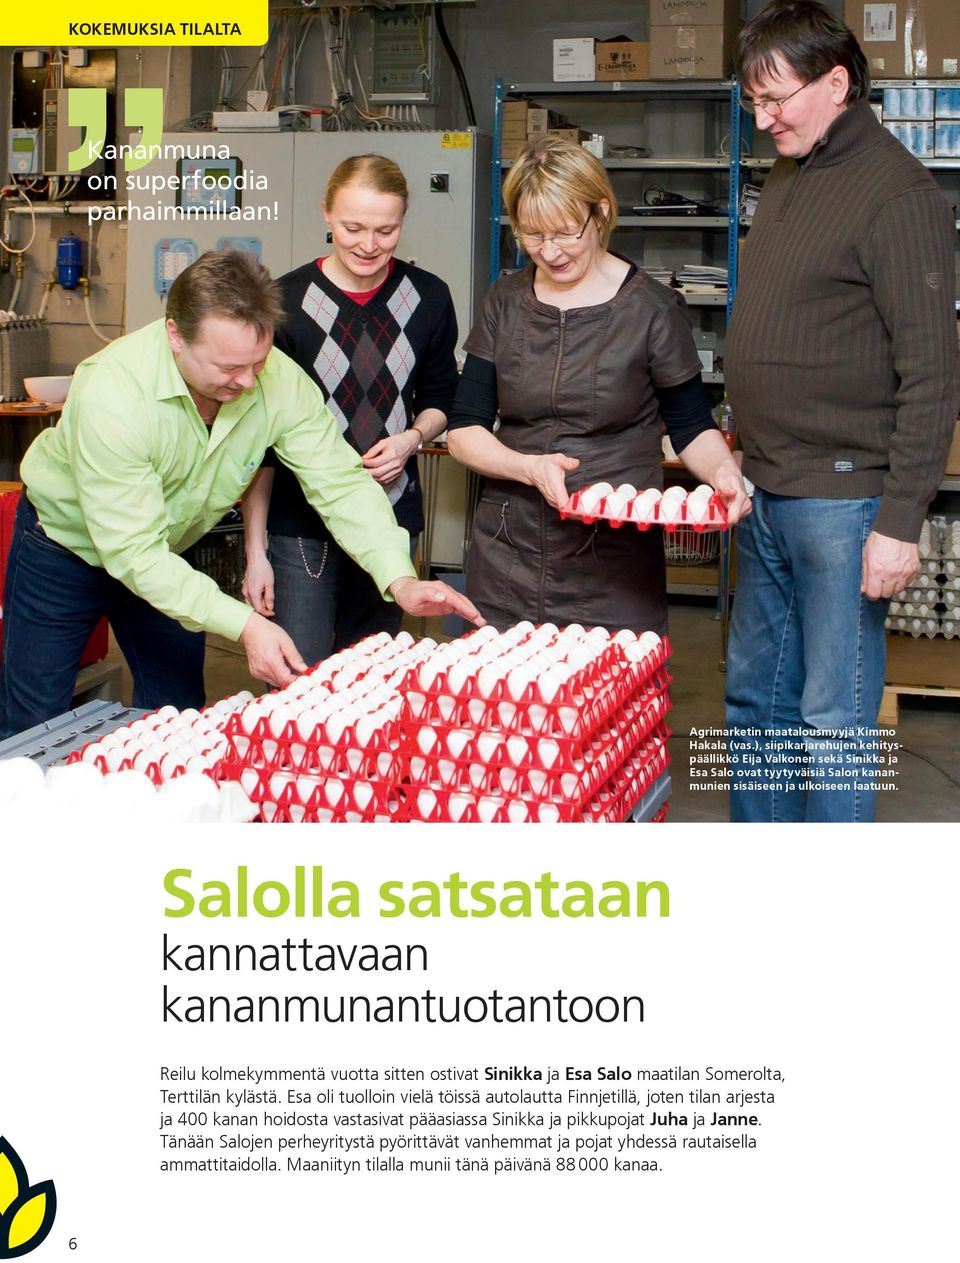 Salolla satsataan kannattavaan kananmunantuotantoon Reilu kolmekymmentä vuotta sitten ostivat Sinikka ja Esa Salo maatilan Somerolta, Terttilän kylästä.